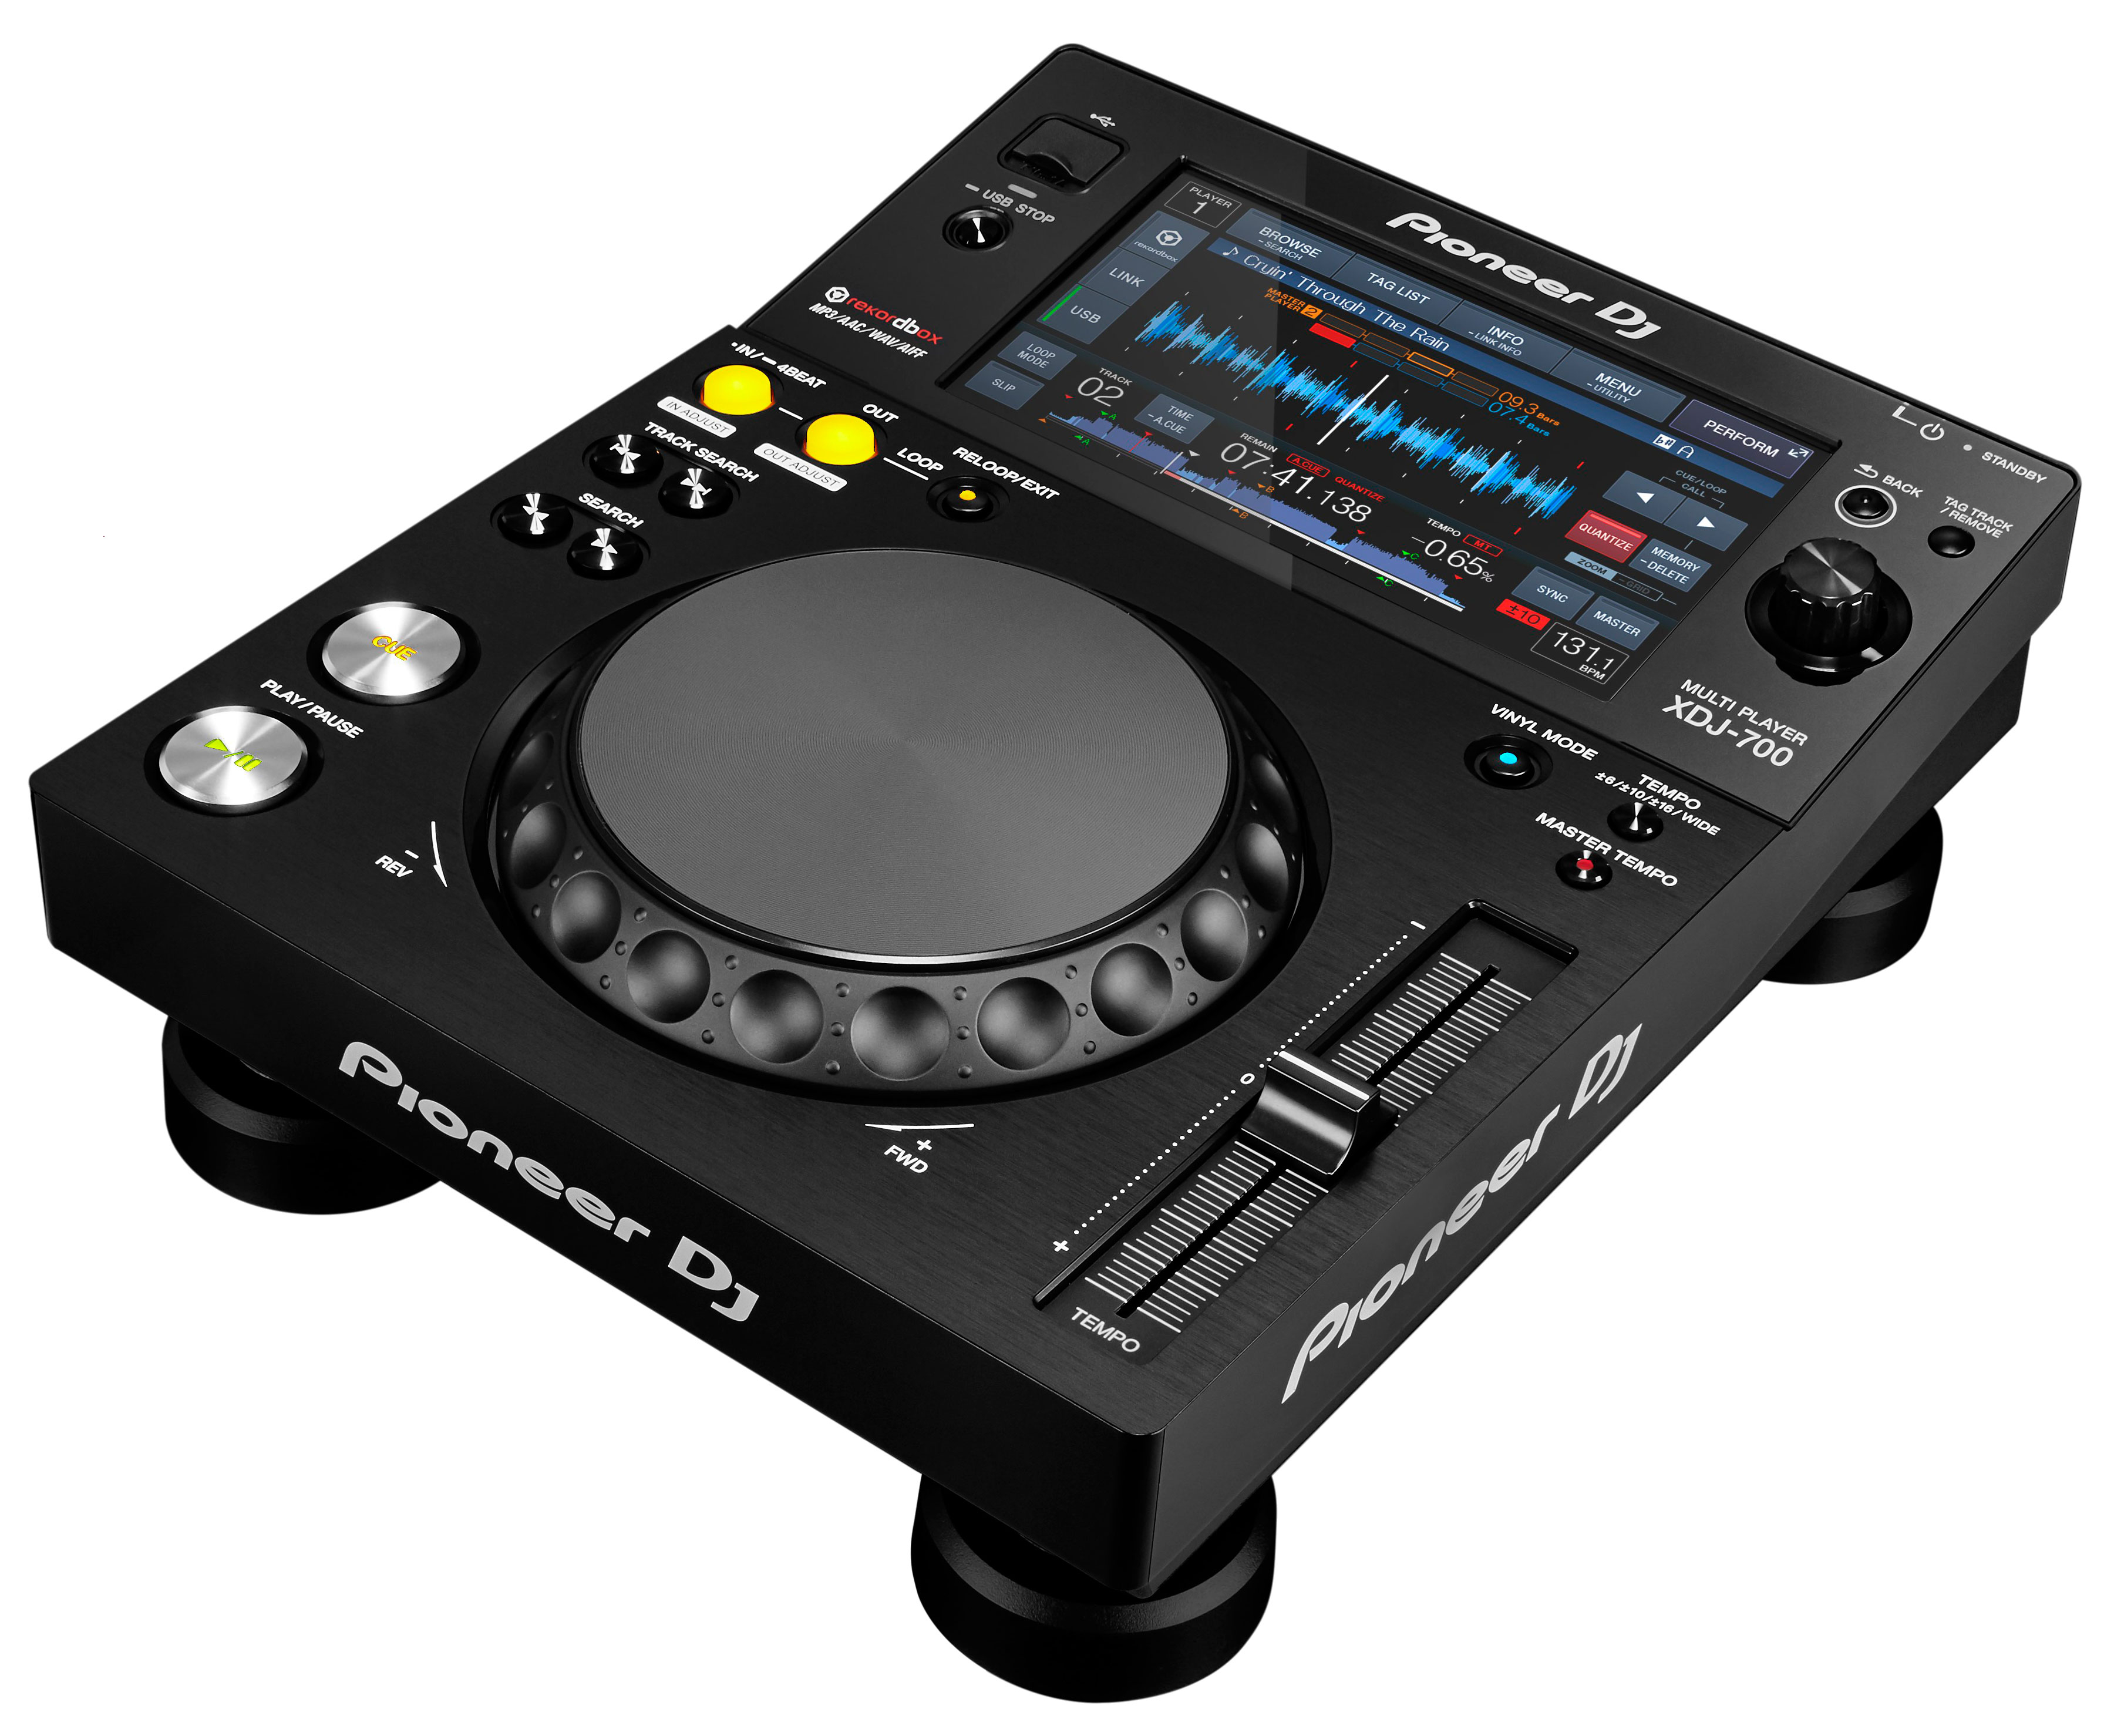 PIONEER XDJ700 - 749,00€ (Mixage DJ) - EDS ELECTRONIQUE